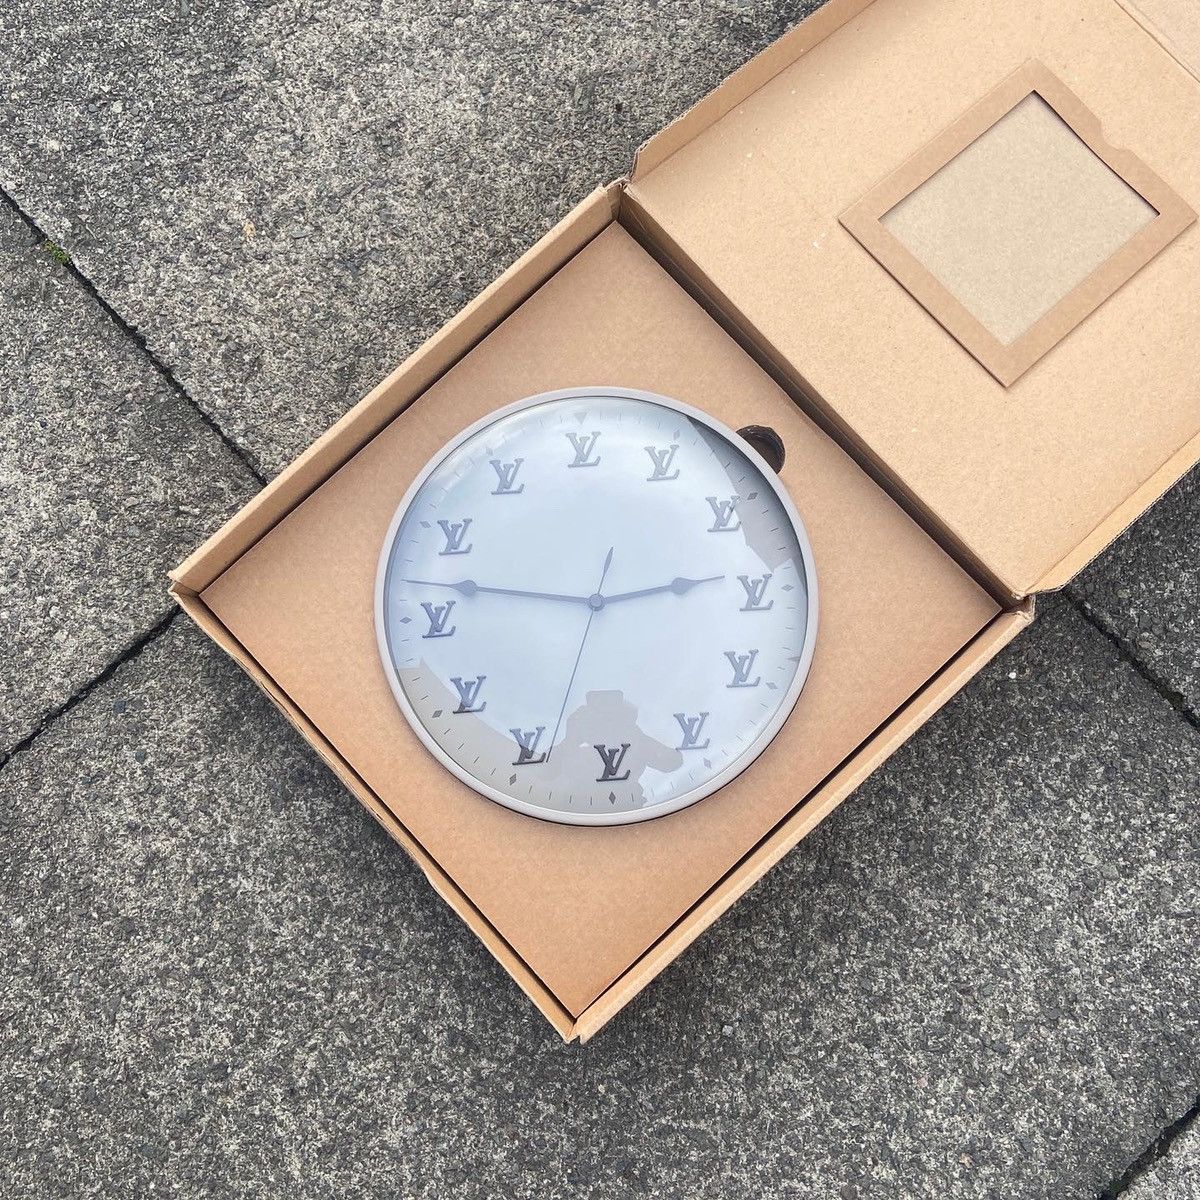 Louis Vuitton Clock Invite